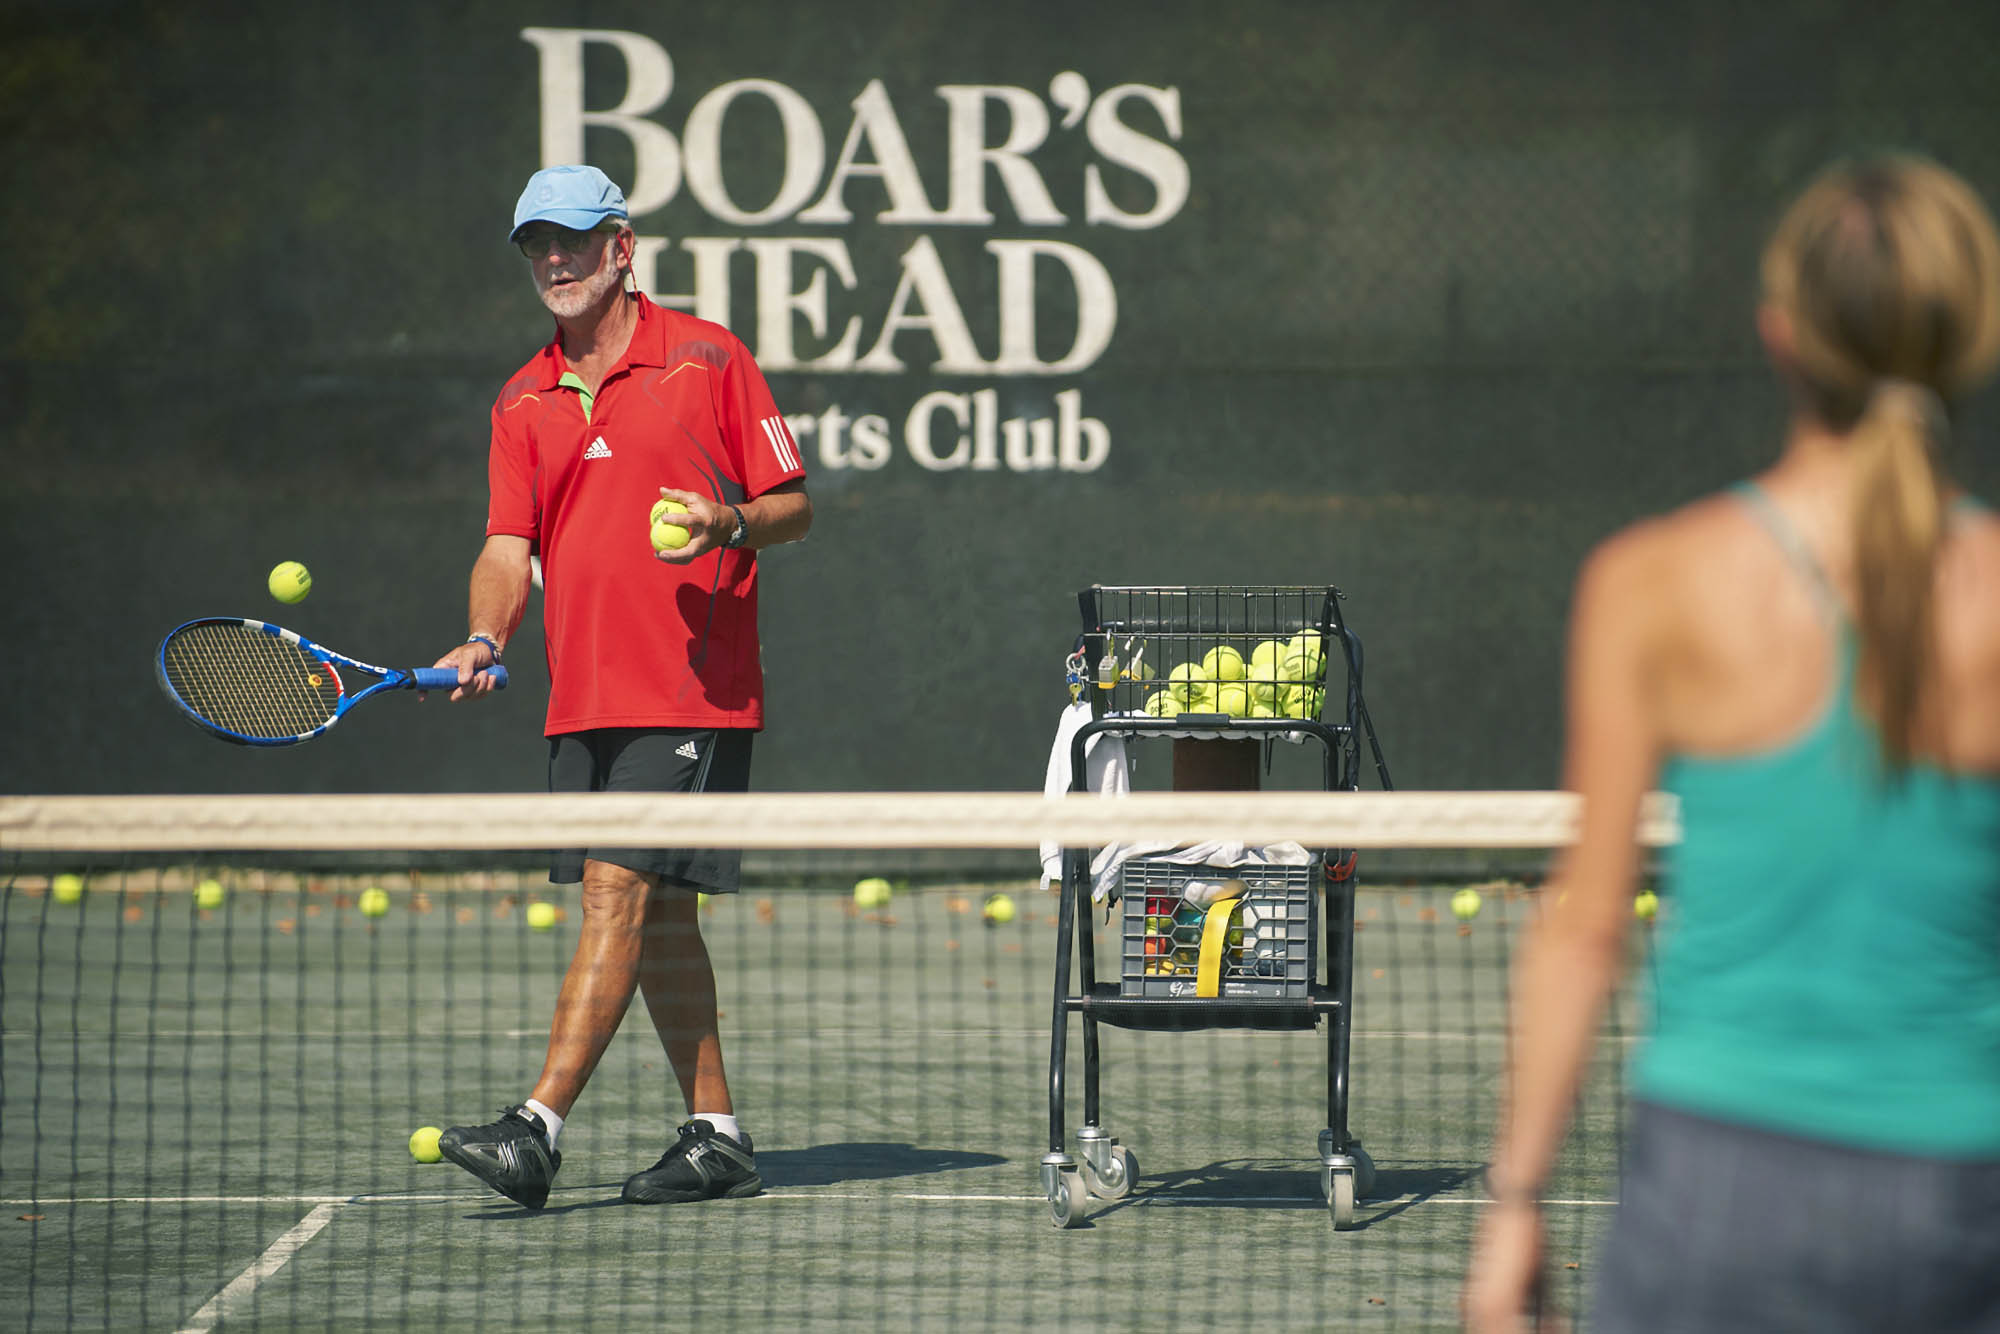 Manilla hitting a tennis ball at the Boar's Head tennis court